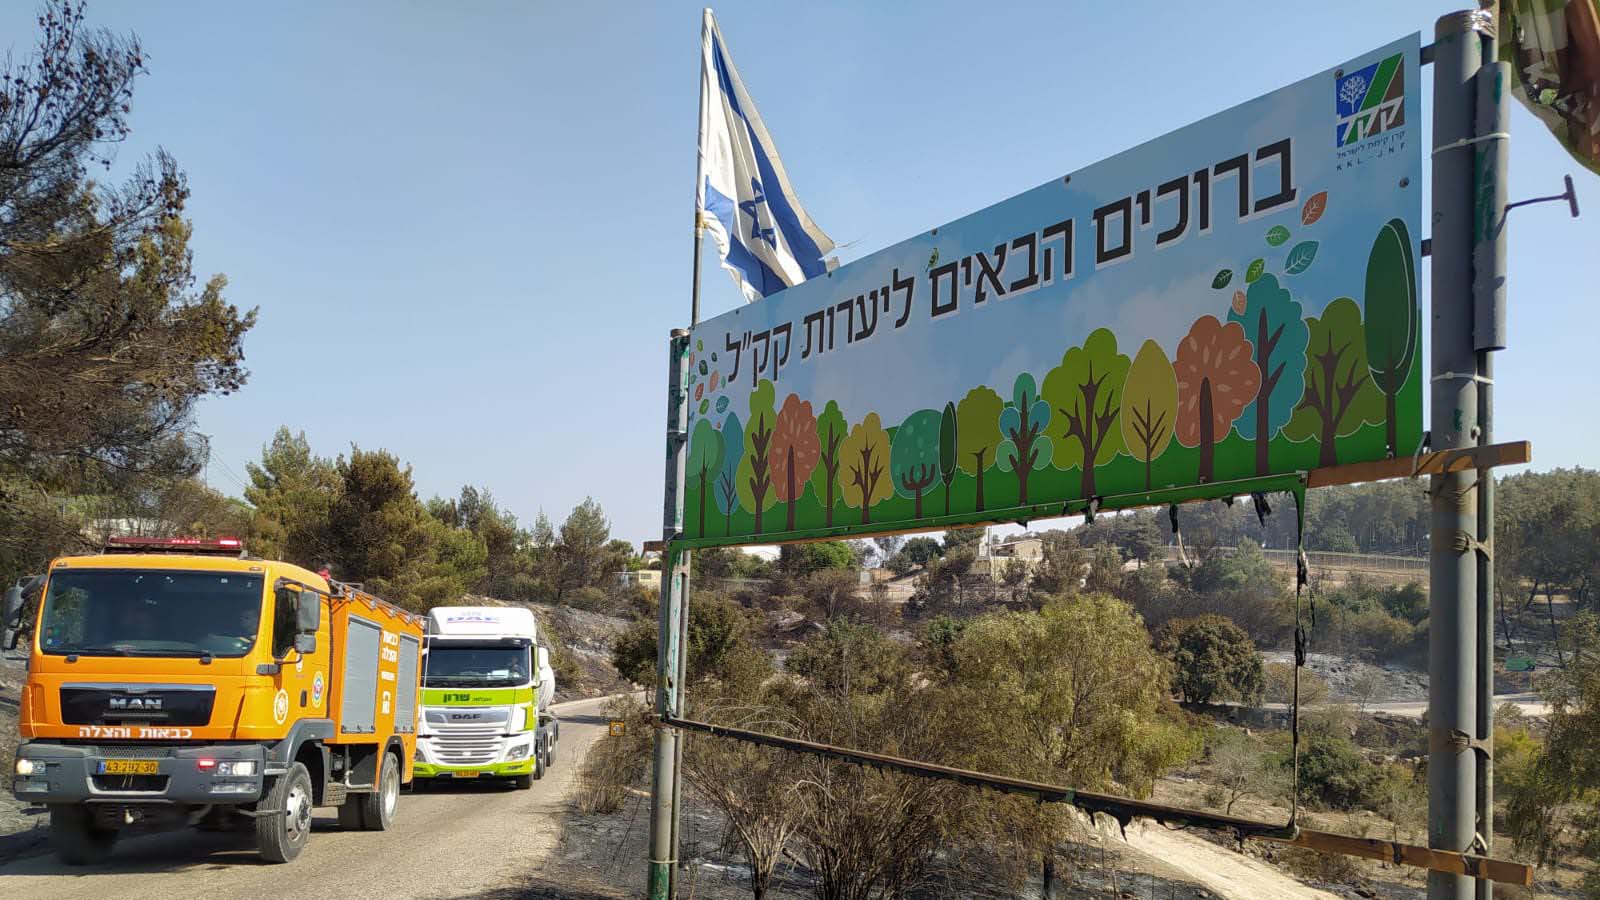 لافتة كيرن كييمت ليسرائيل التي ذابت في مدخل أحراش تشرتشل (تصوير: ياهل فرج)